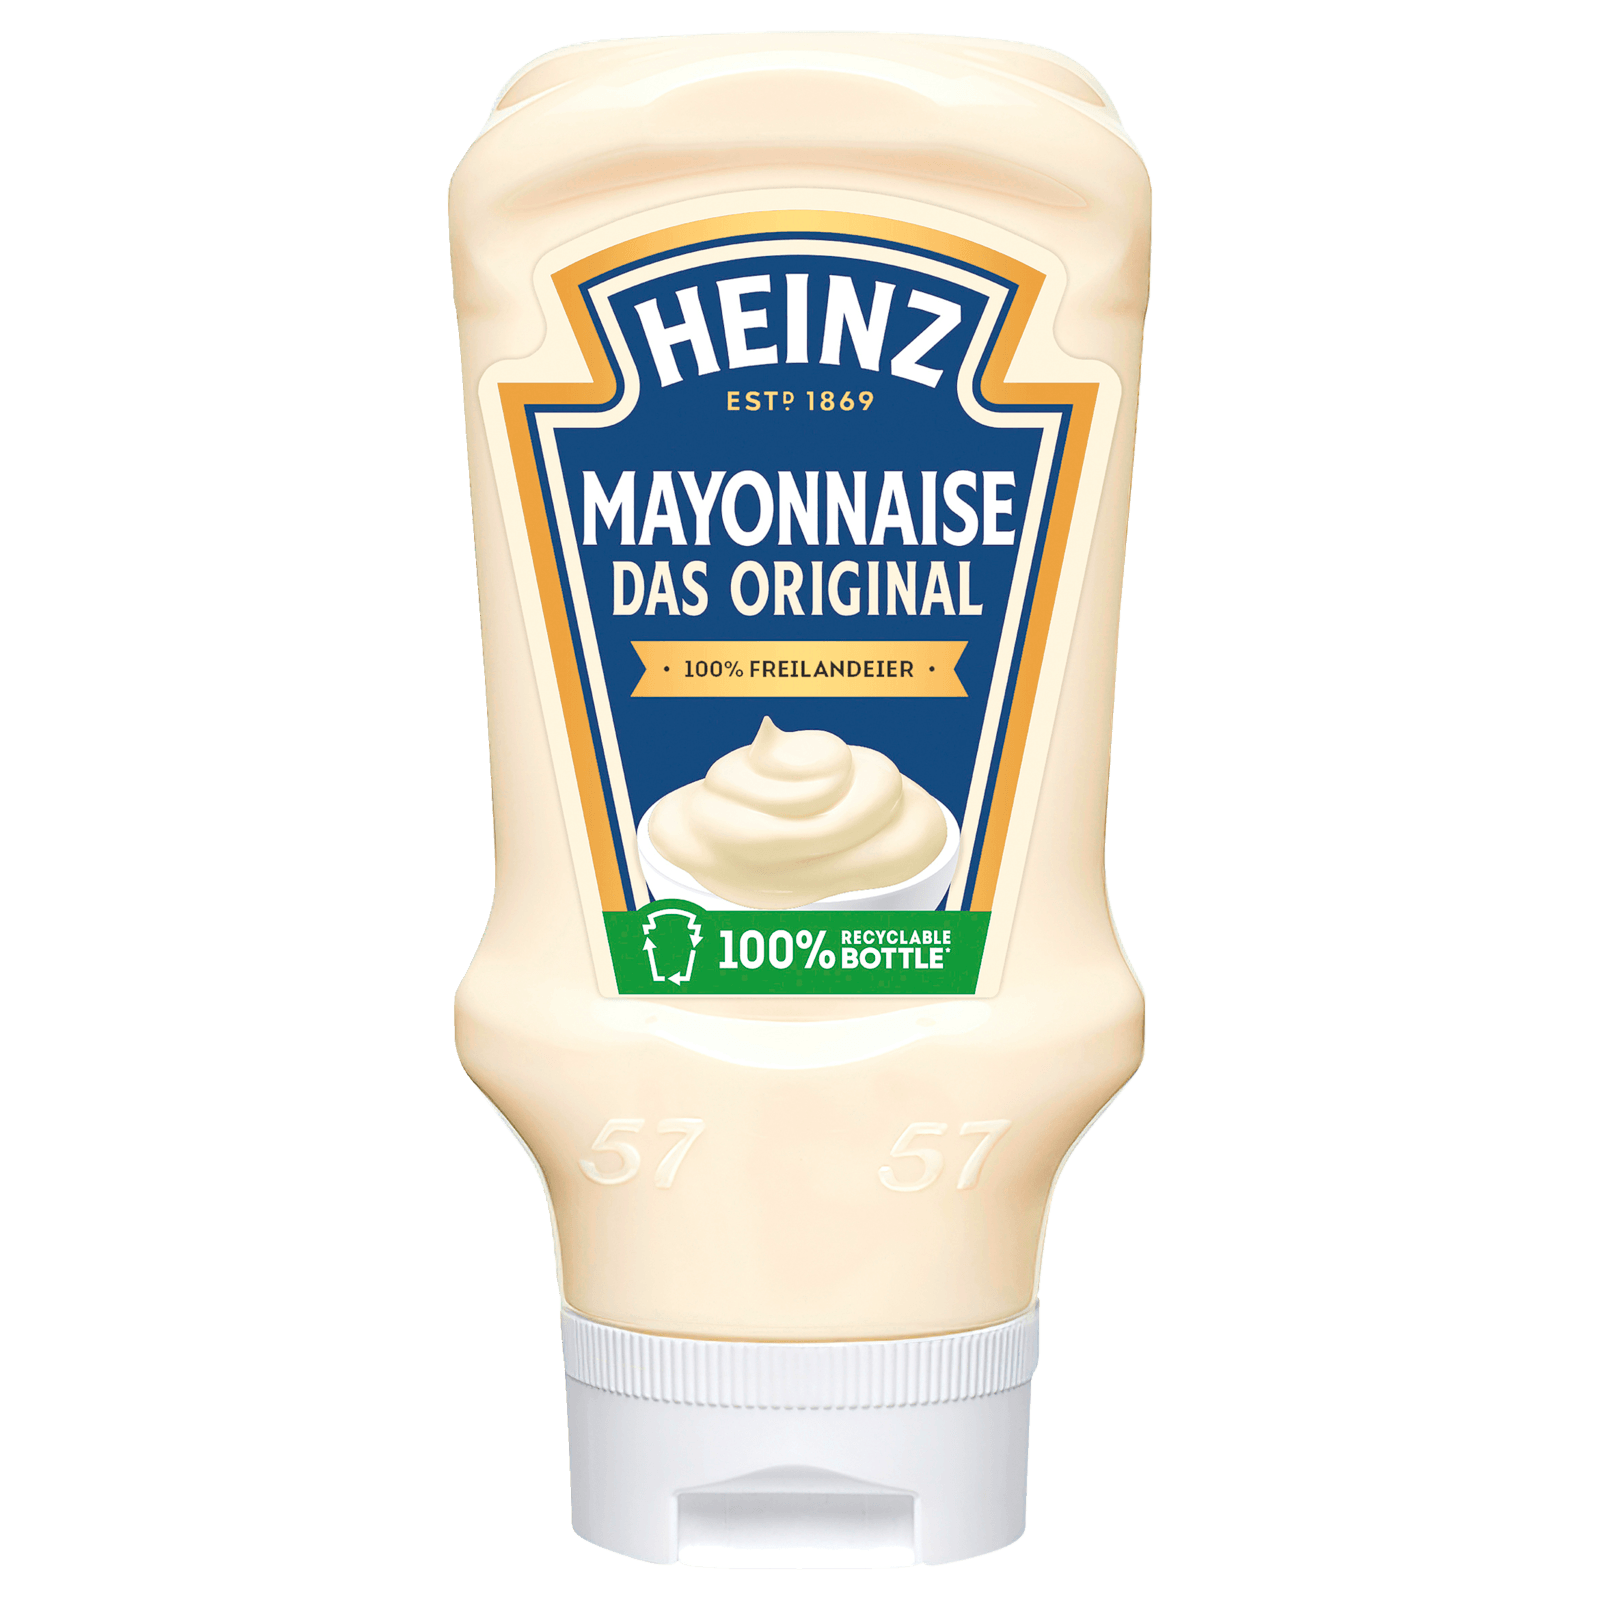 Mayonnaise & Salatcreme online kaufen - REWE.de